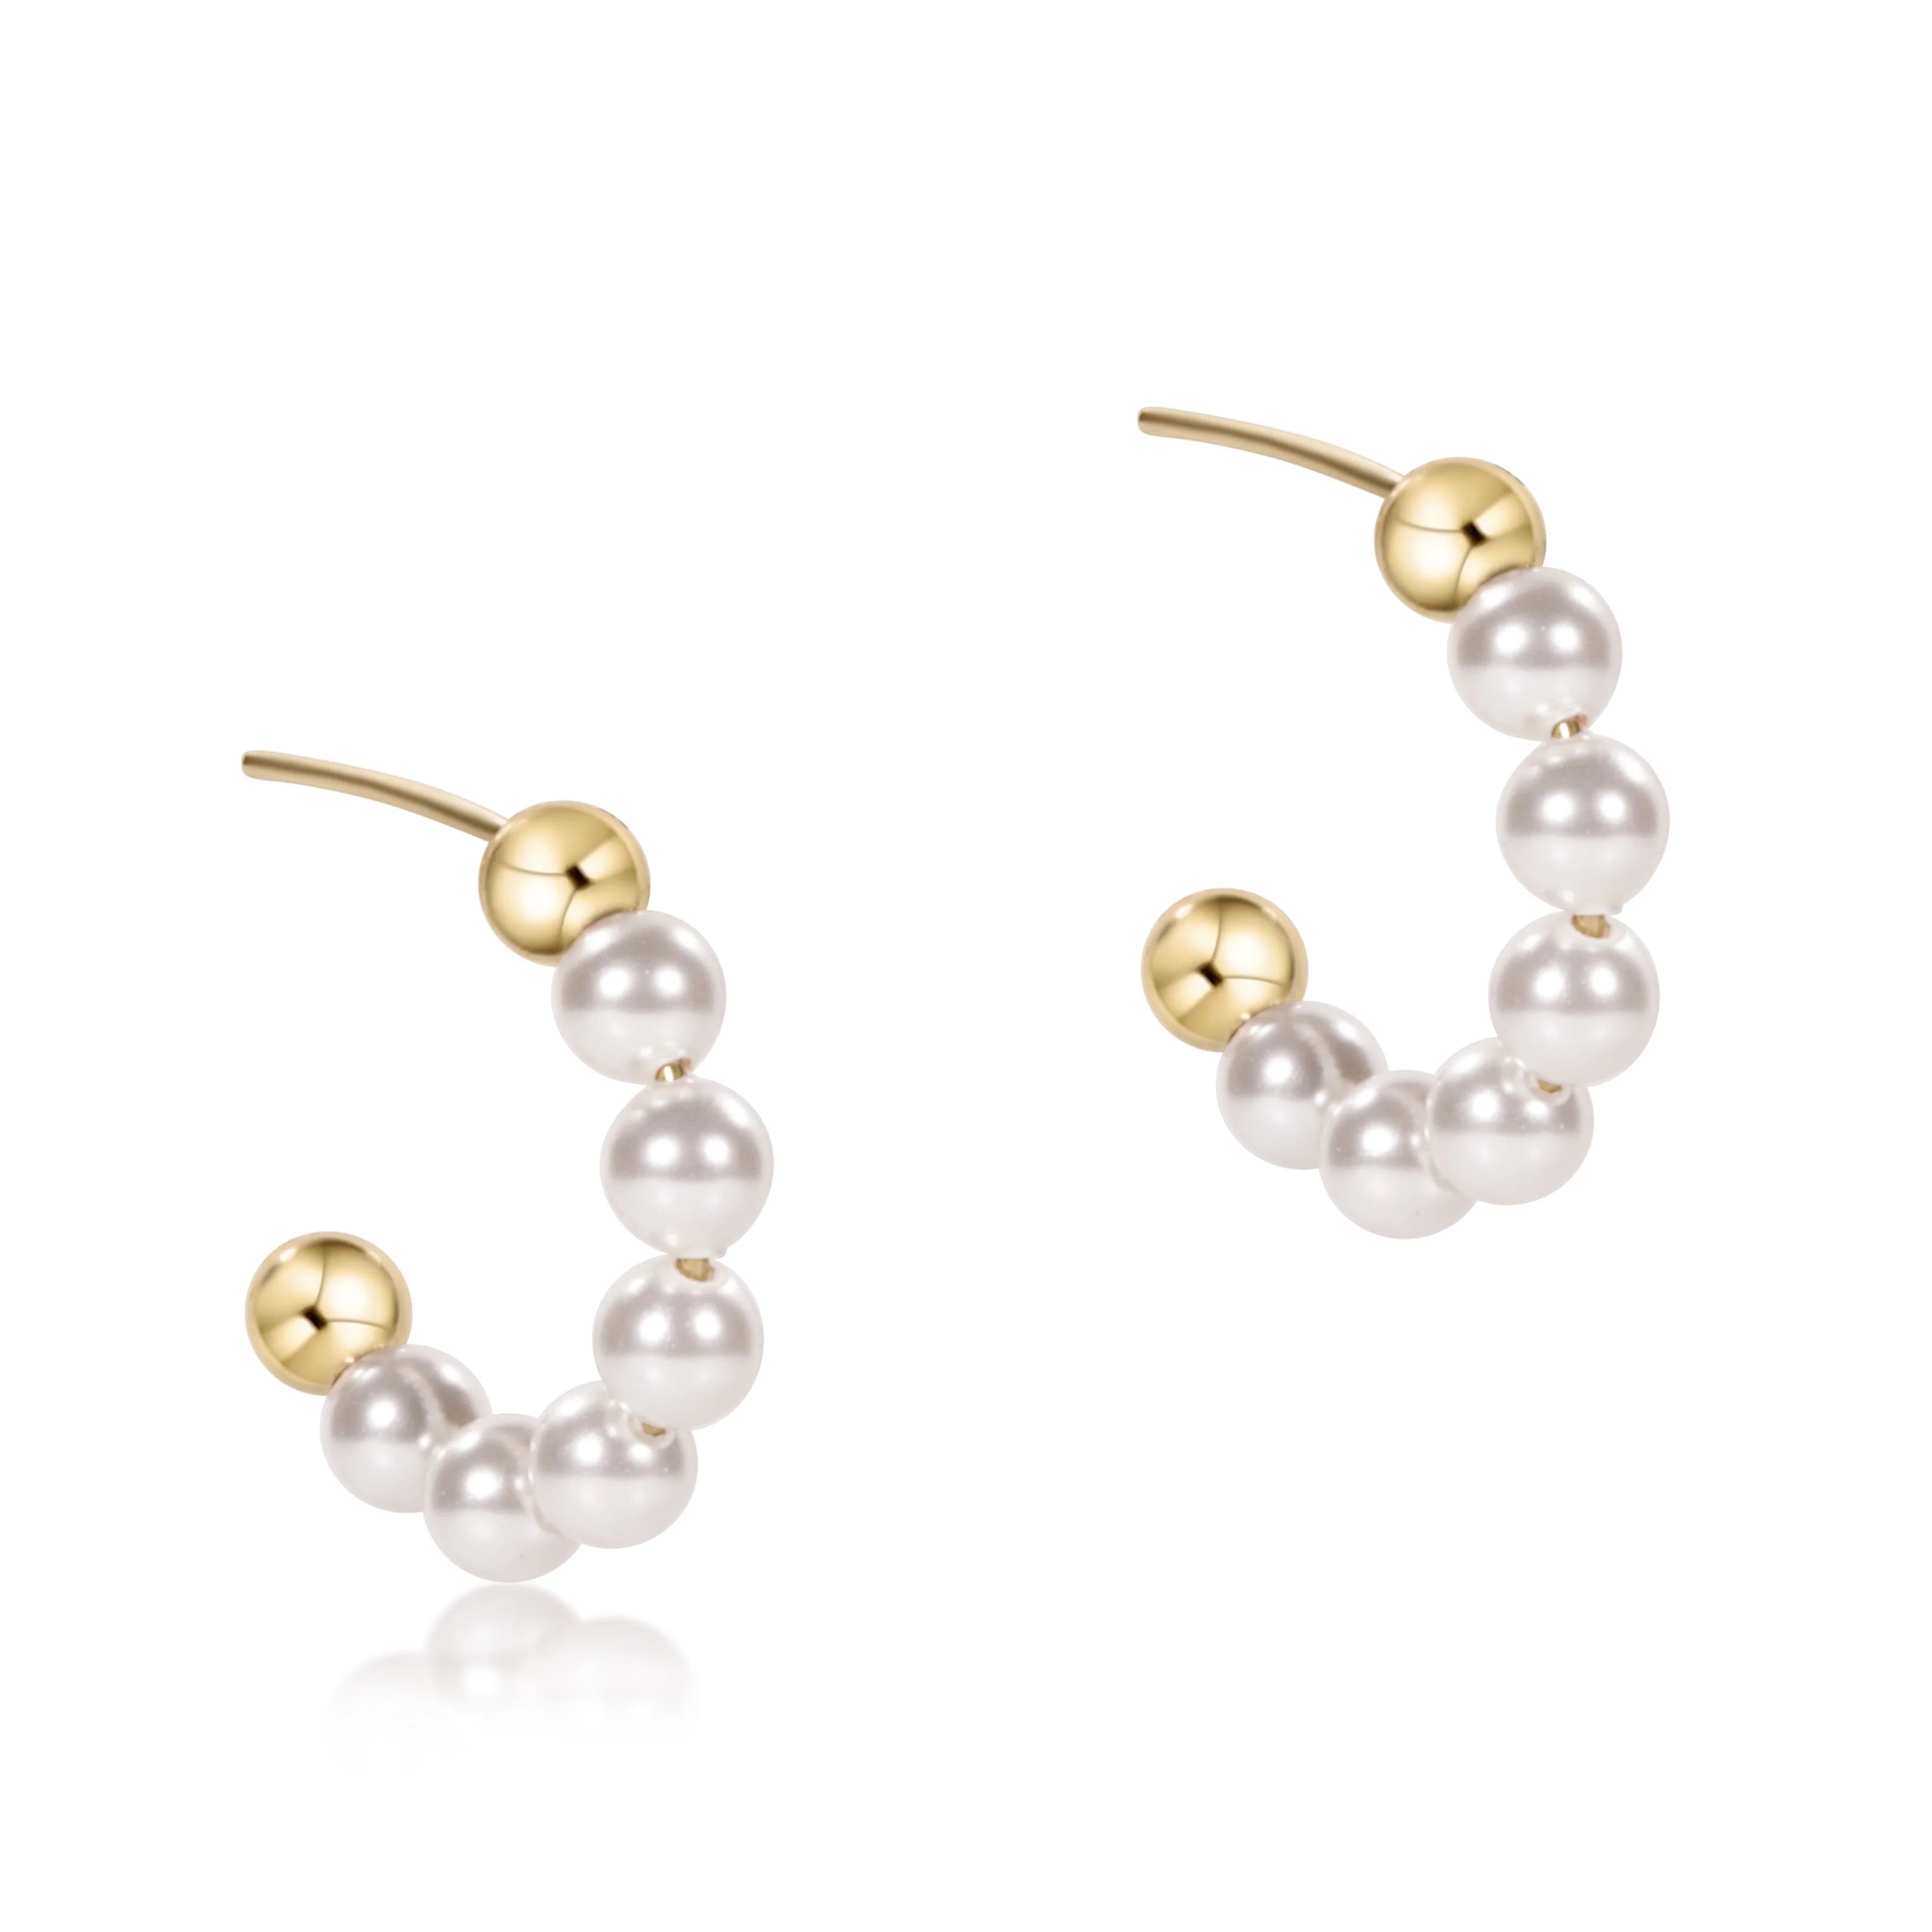 4mm Pearl and Gold Bead Hoop Earrings